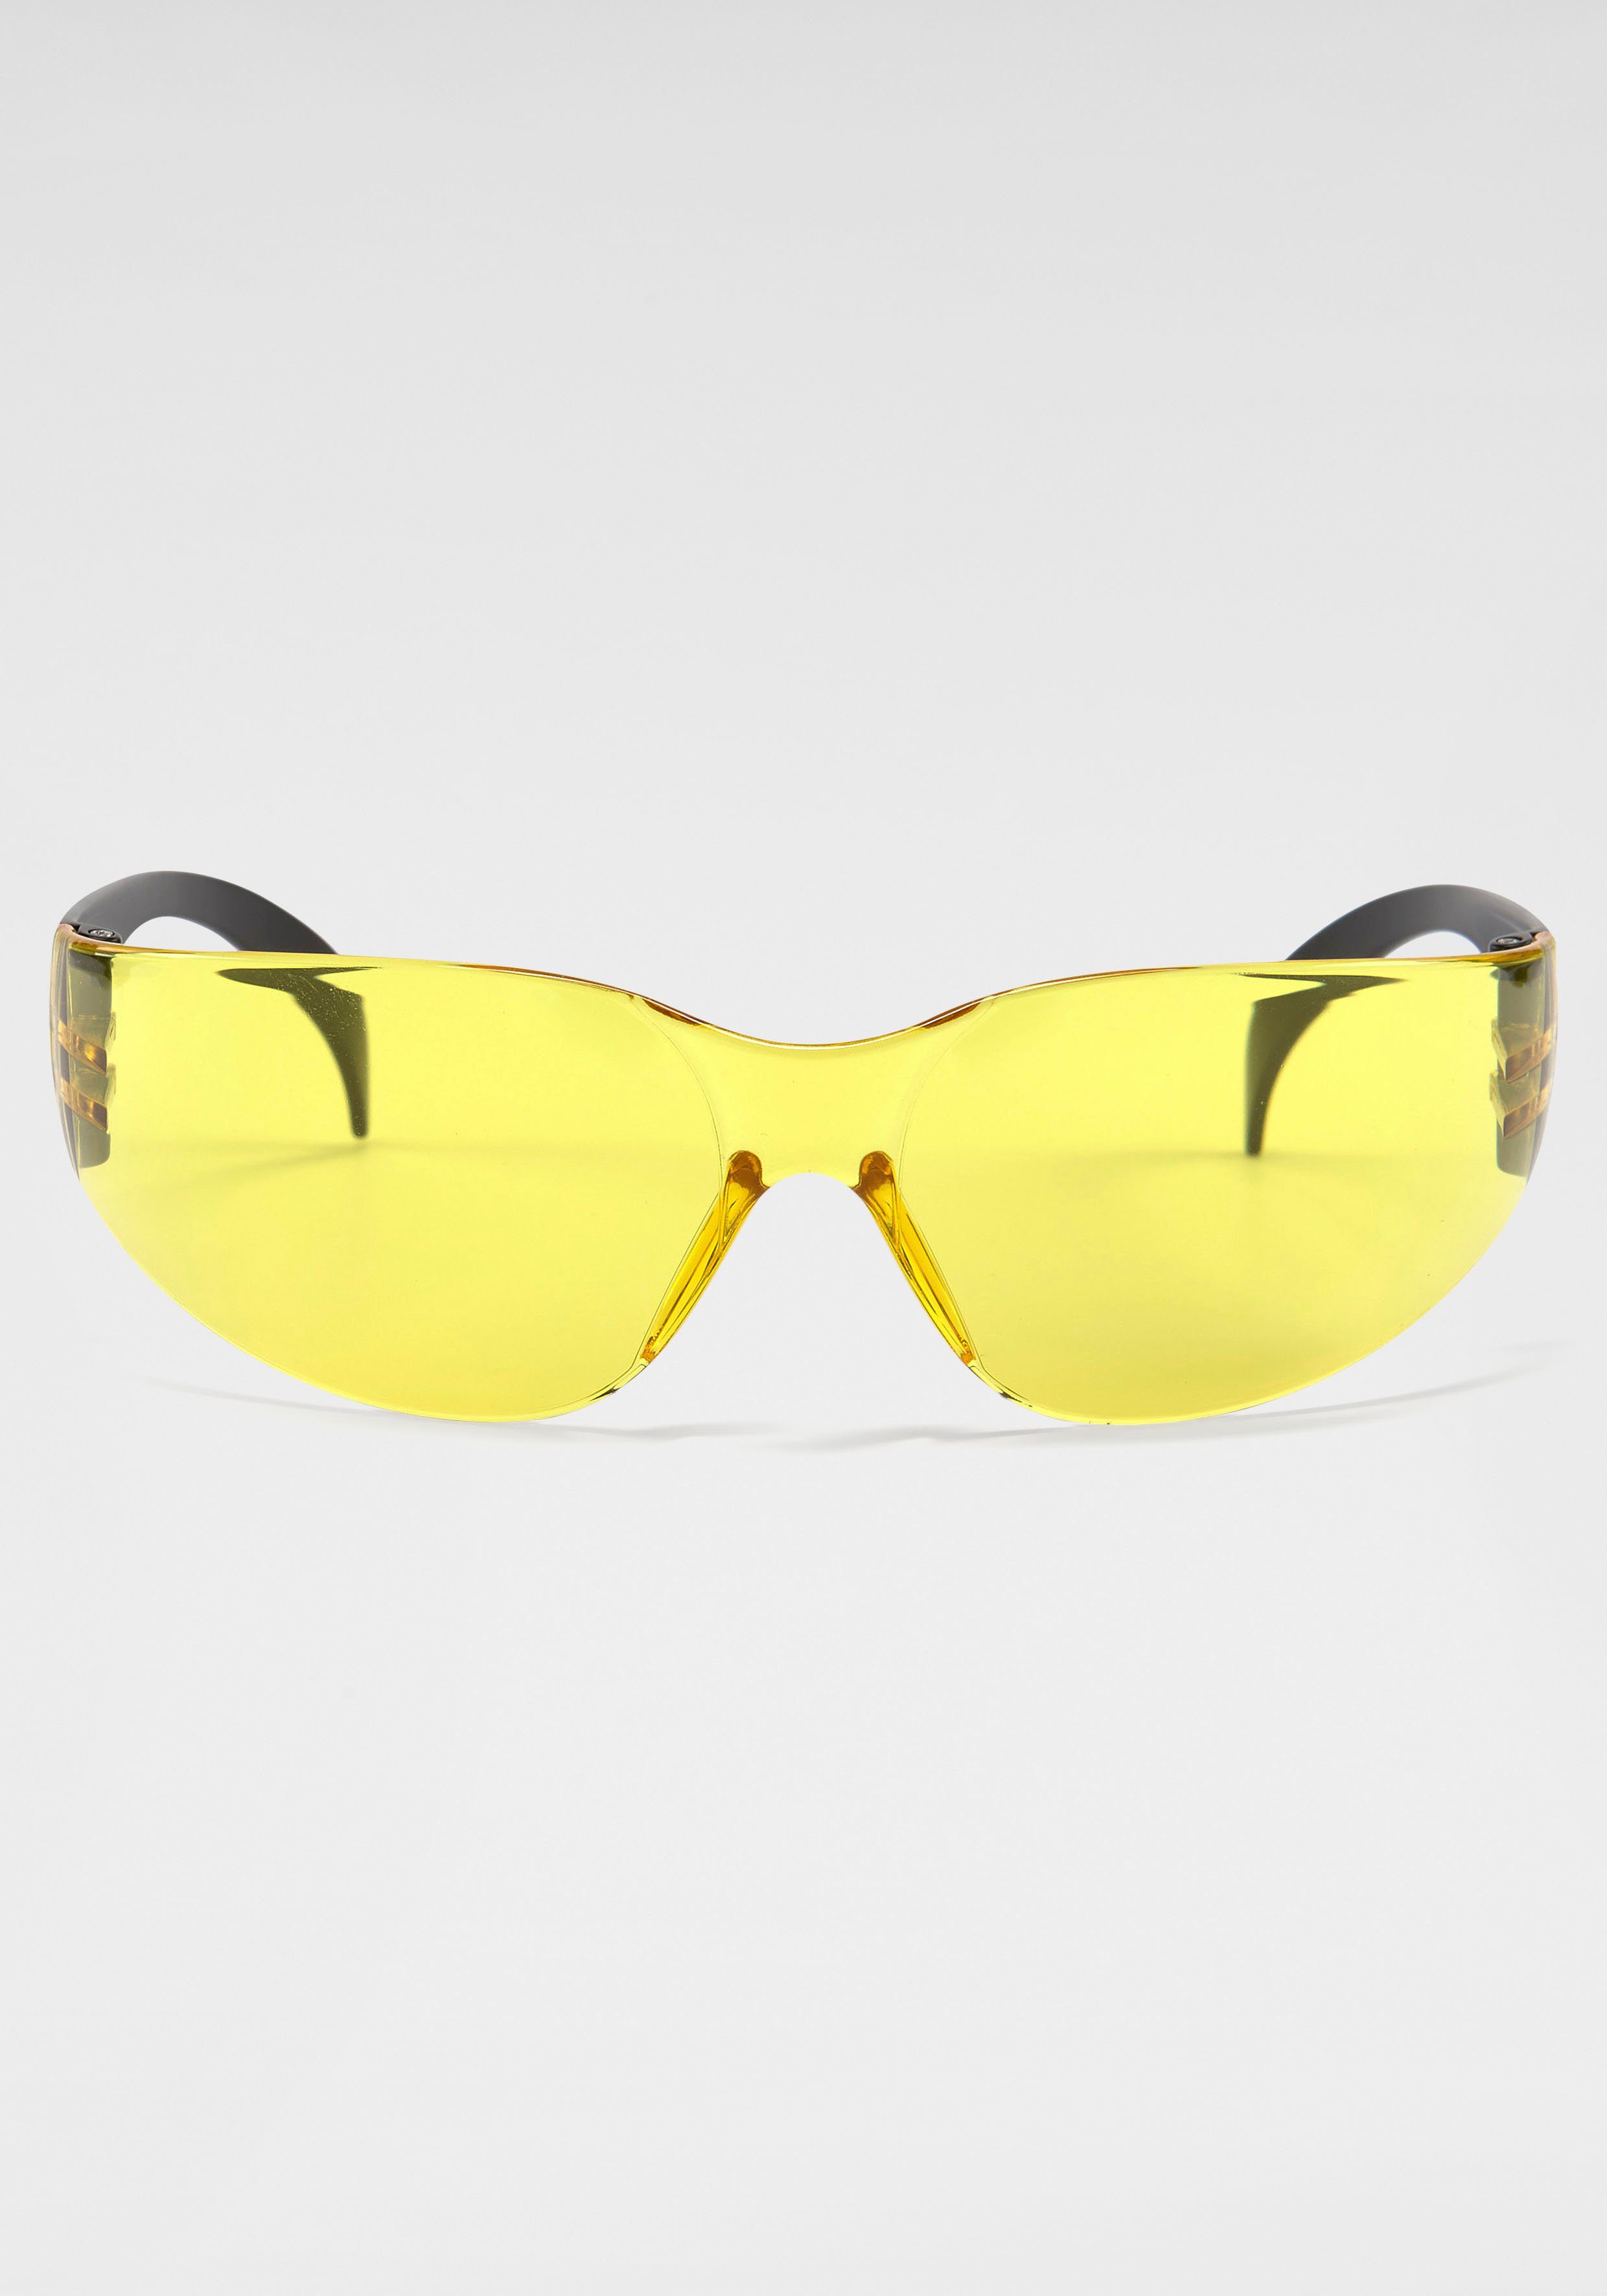 BACK IN BLACK Eyewear Sonnenbrille Randlos gelb | Sonnenbrillen